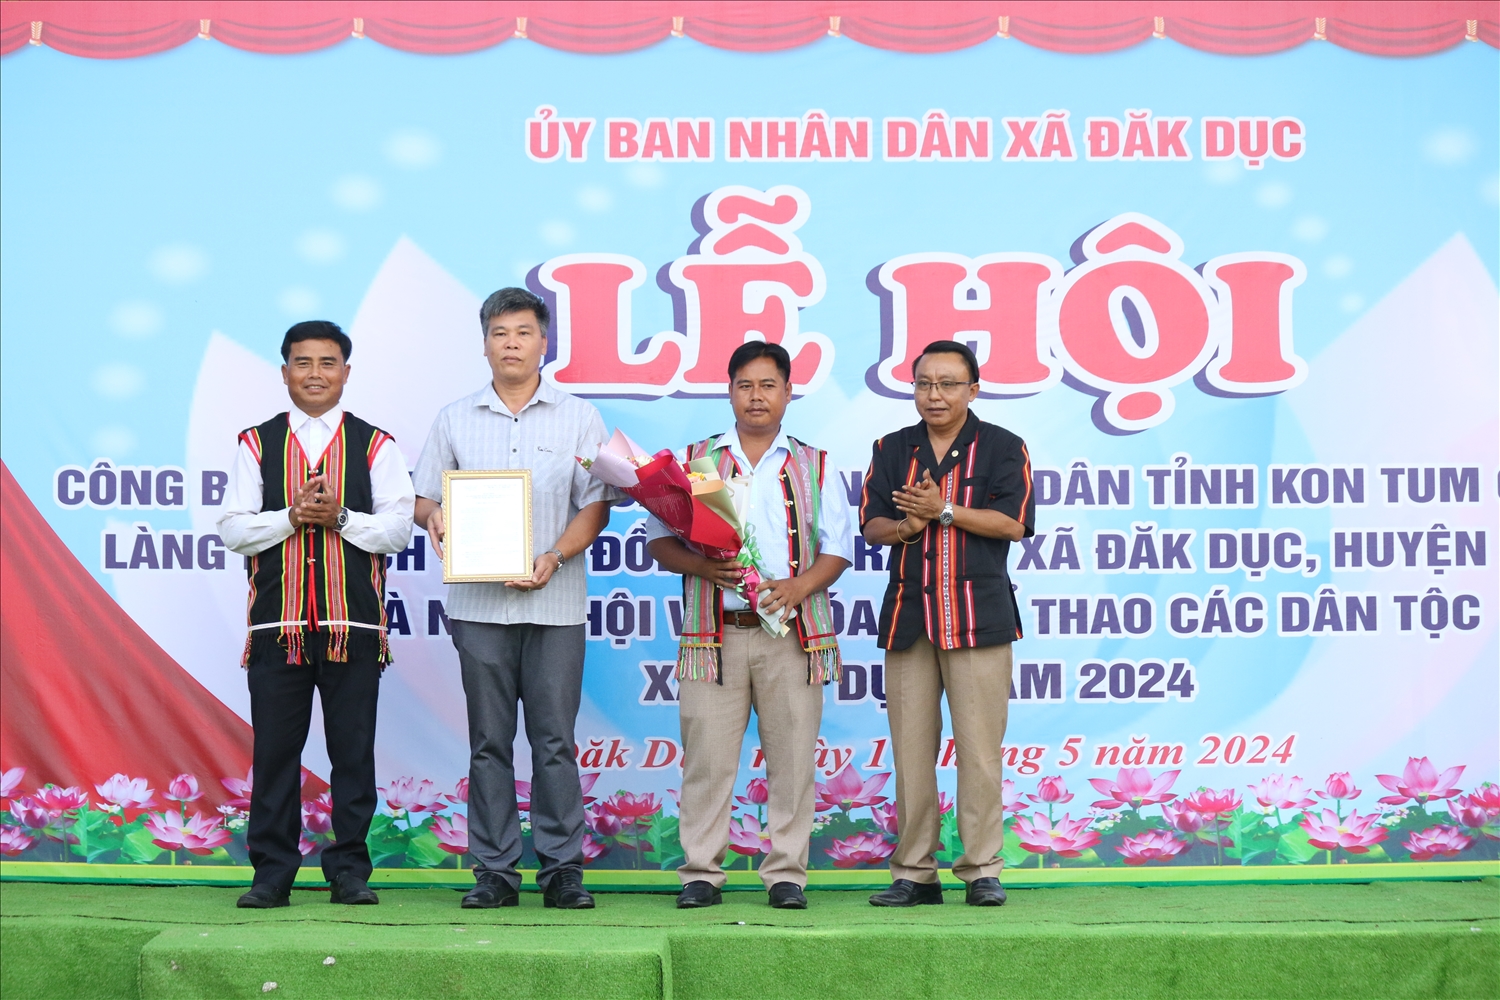 Lãnh đạo Sở Văn hóa, Thể thao và Du lịch tỉnh Kon Tum trao Quyết định của UBND tỉnh công nhận Làng du lịch cộng đồng Đăk Răng